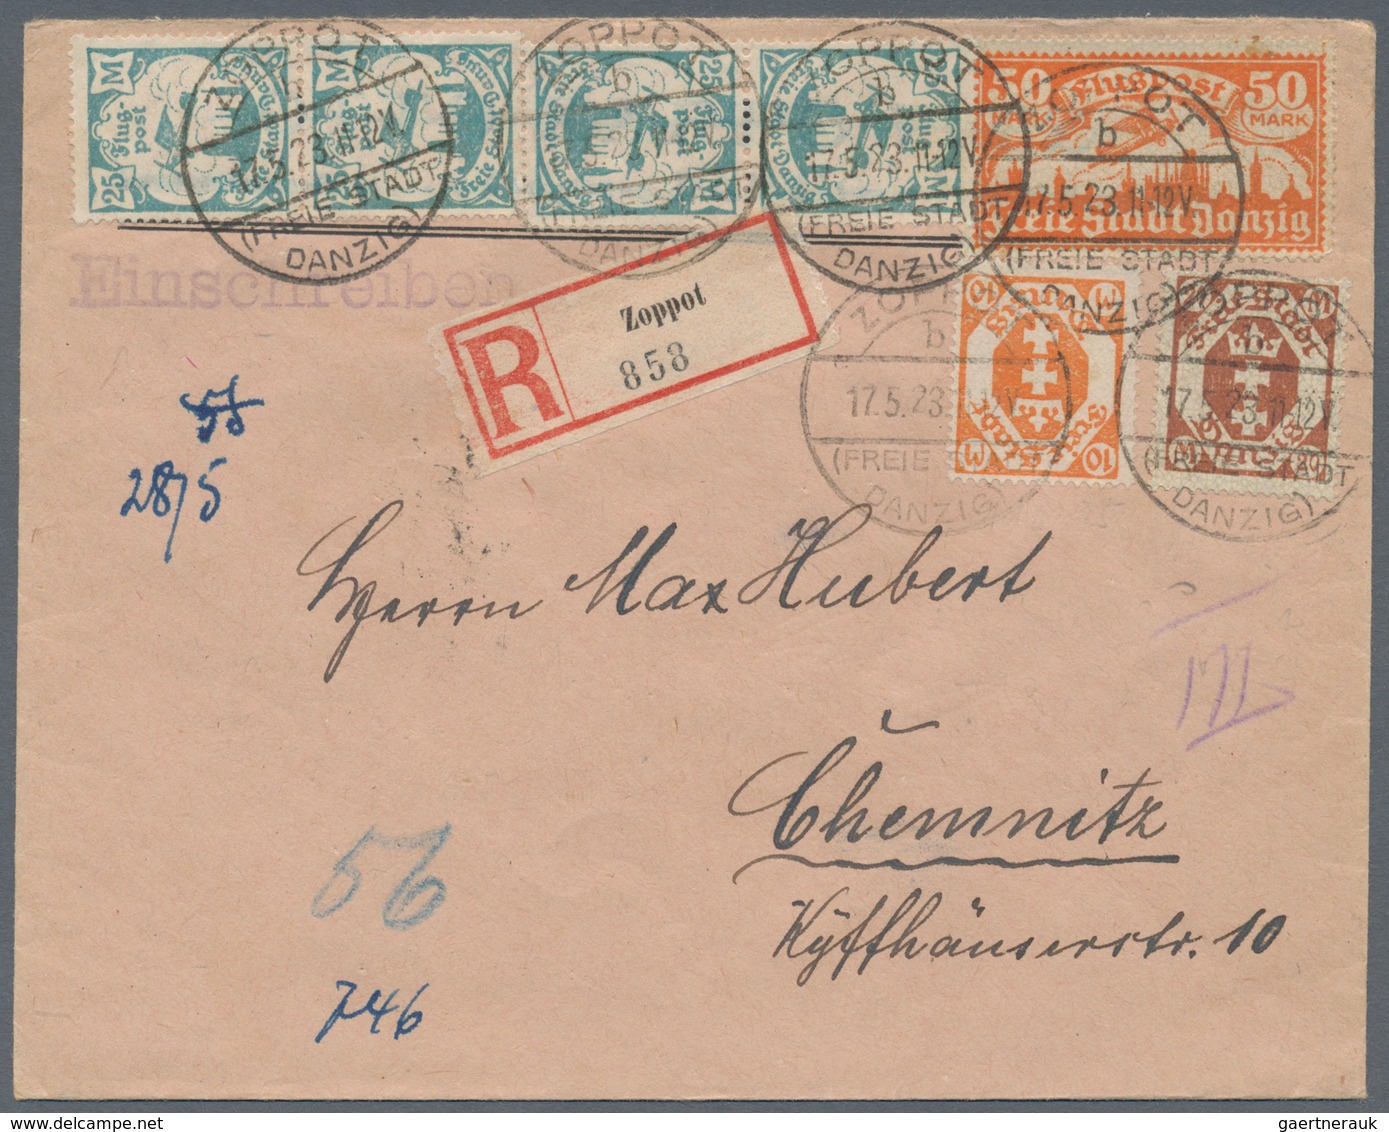 Danzig: 1875/1943, vielseitige Partie von ca. 135 Bedarfs-Briefen/Karten in guter Vielfalt ab einige